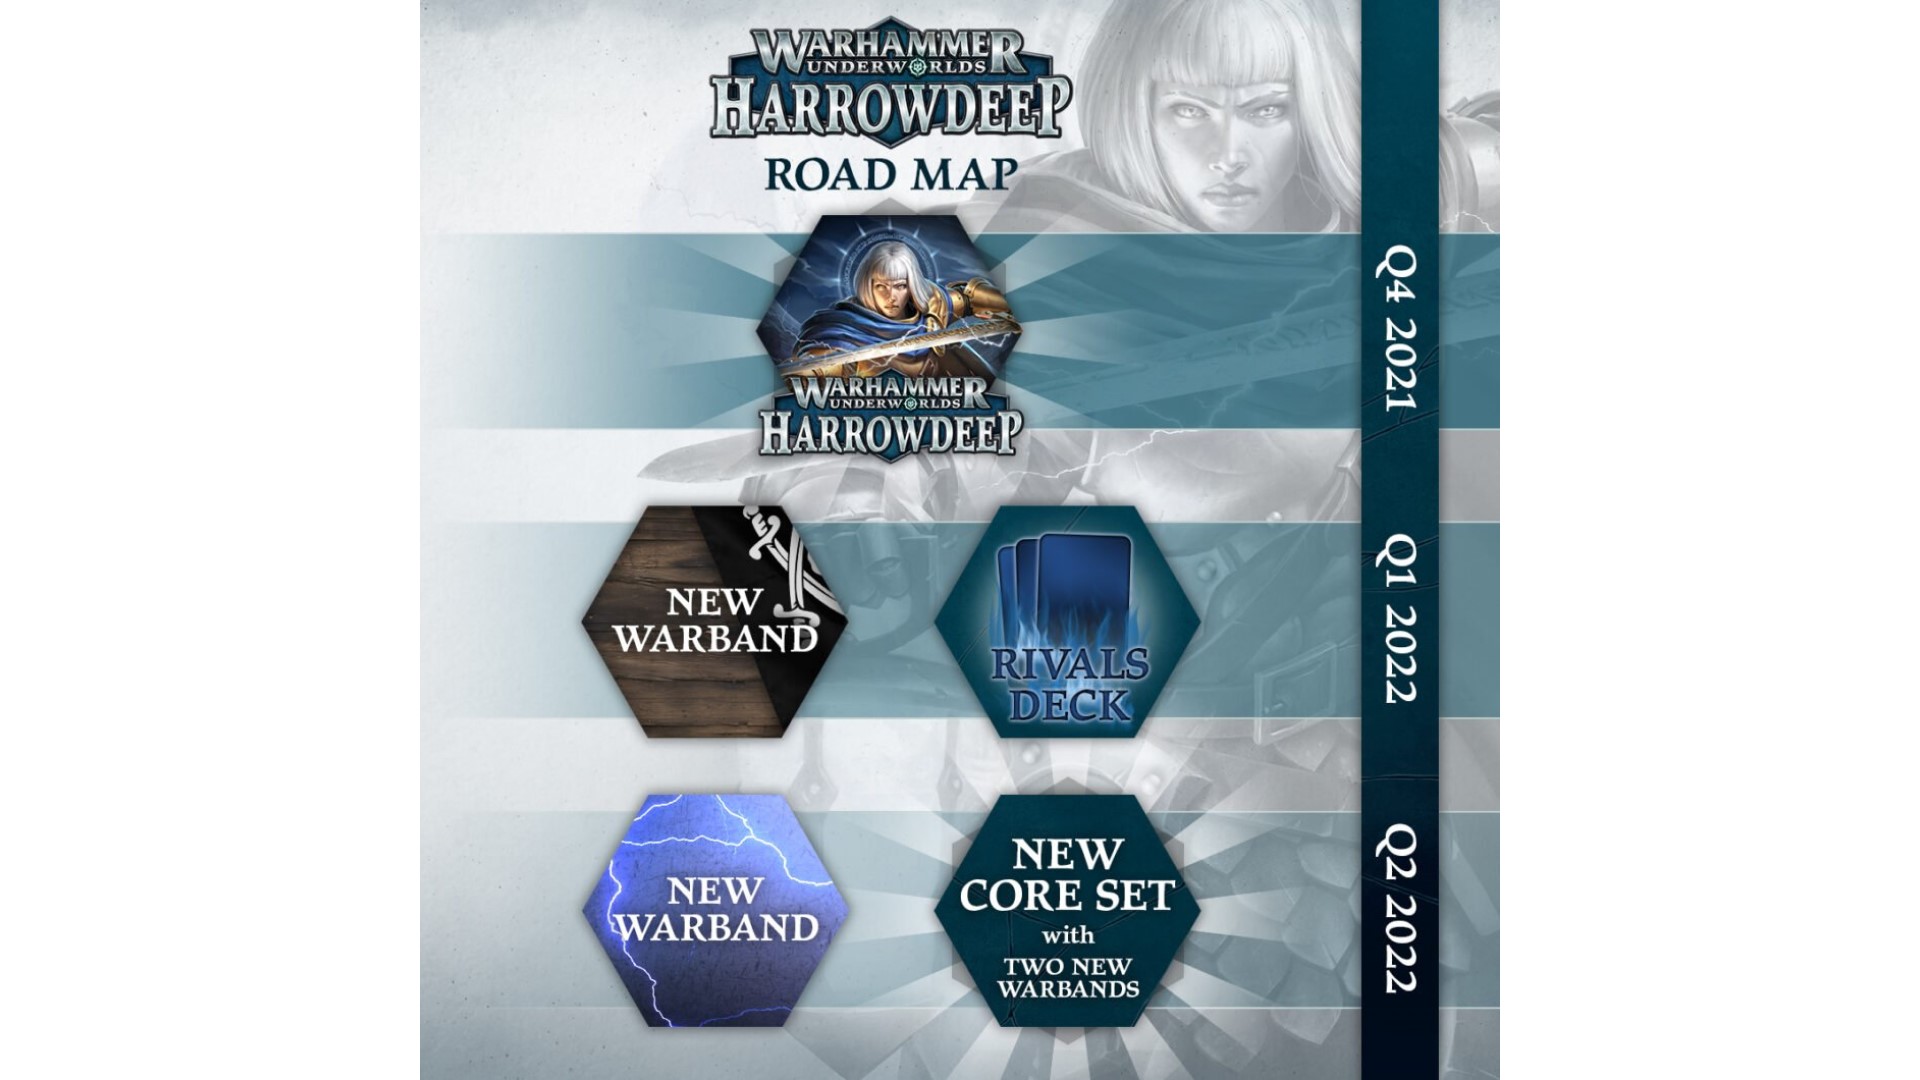 Warhammer Underworlds: Harrowdeep - Game Nerdz